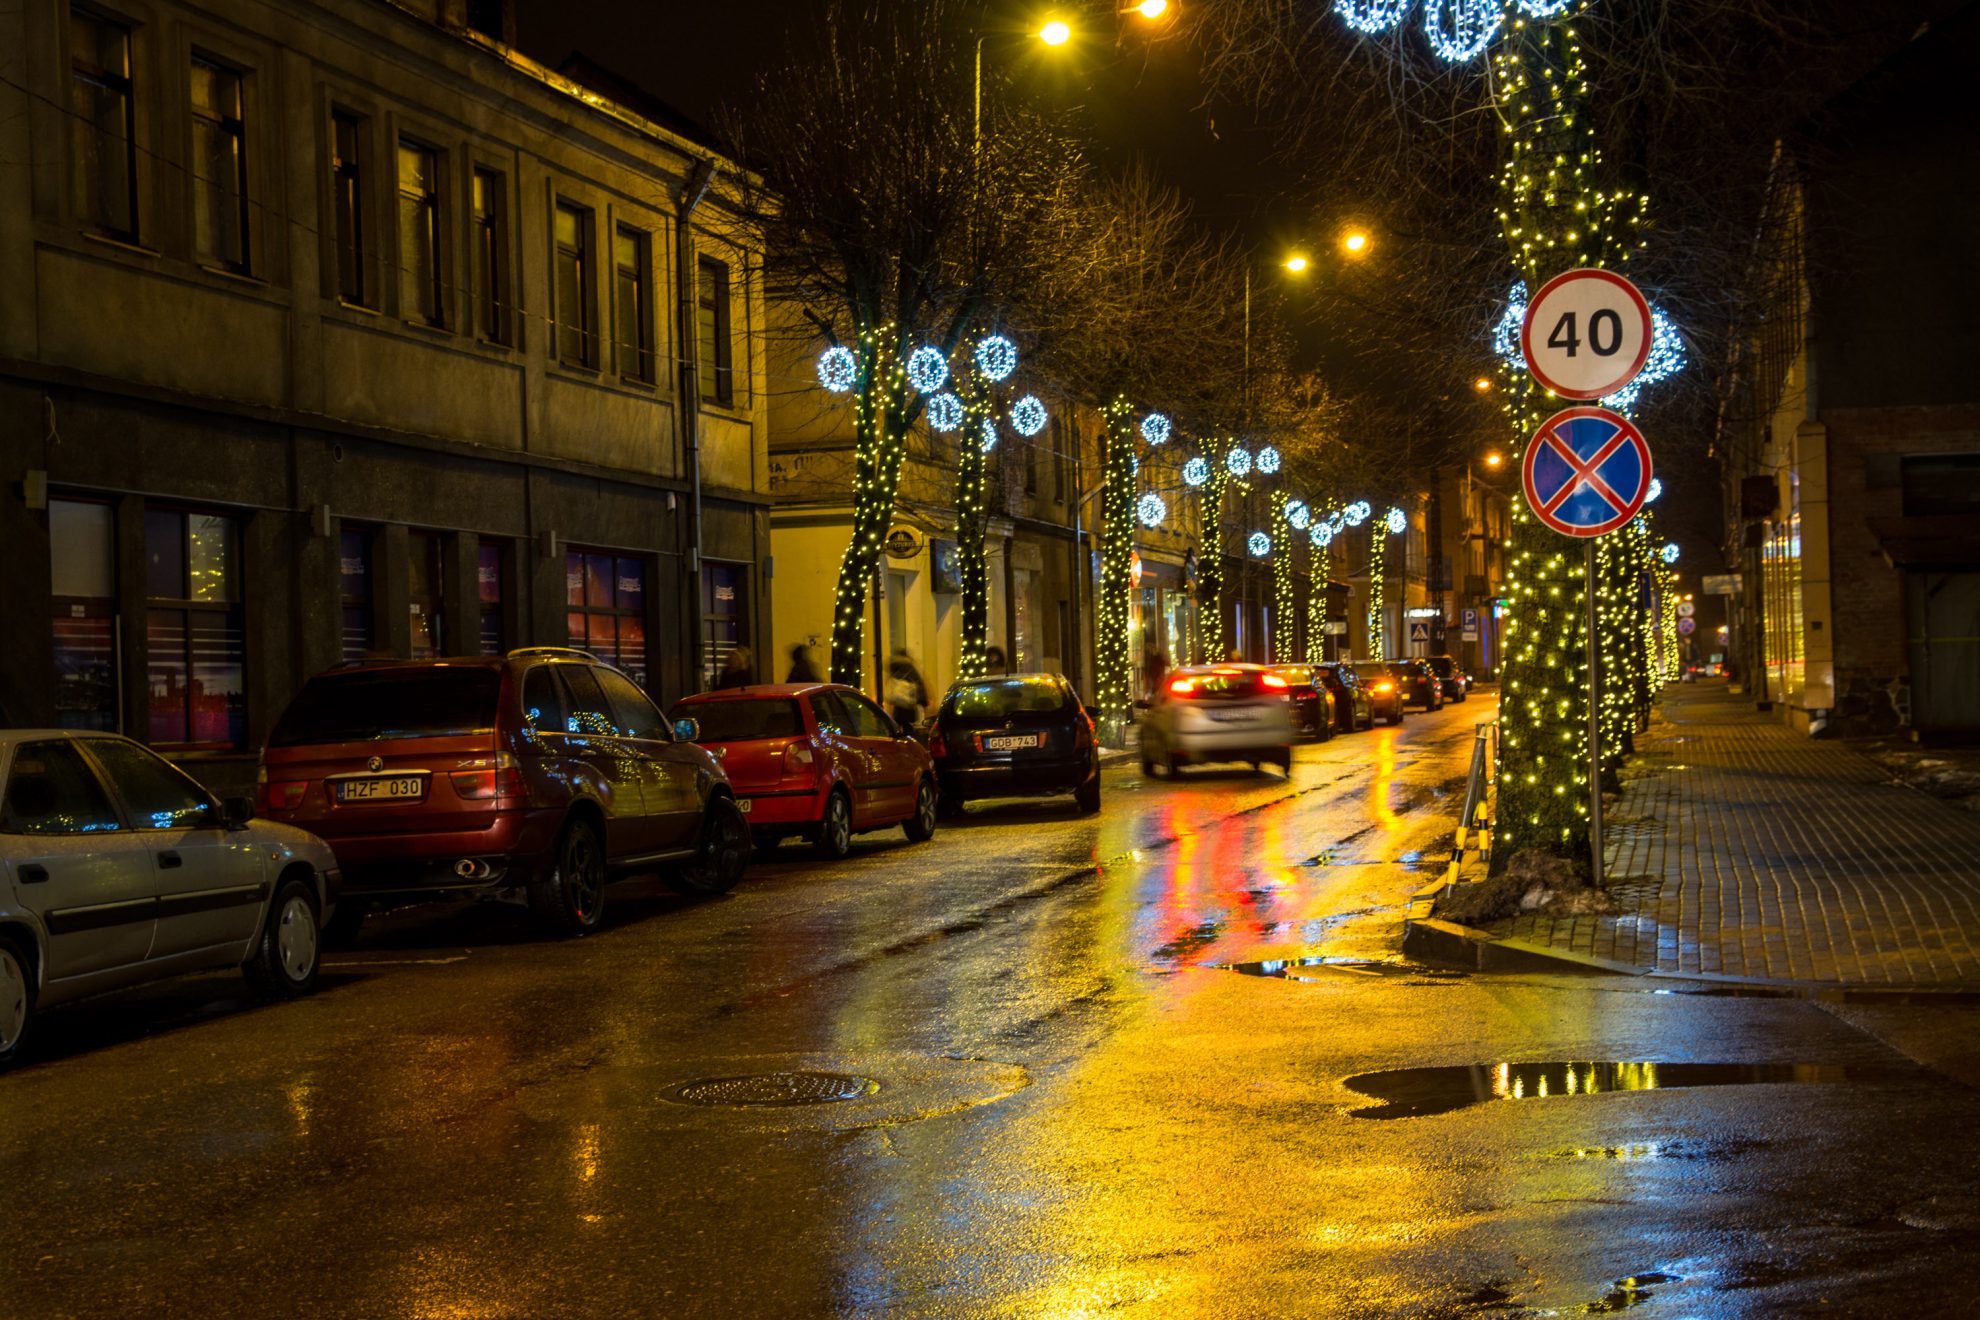 Kalėdos – stebuklų metas. Šiemet Panevėžys kalėdinėms puošmenoms skyrė rekordinę sumą – beveik 150 tūkst. eurų. Pagrindinis miesto Kalėdų medis įžiebtas bus jau po trijų savaičių – lapkričio 30-ąją, bet paslaptis, kaip šventiškai pasidabins Aukštaitijos sostinė, laikoma po devyniais užraktais.